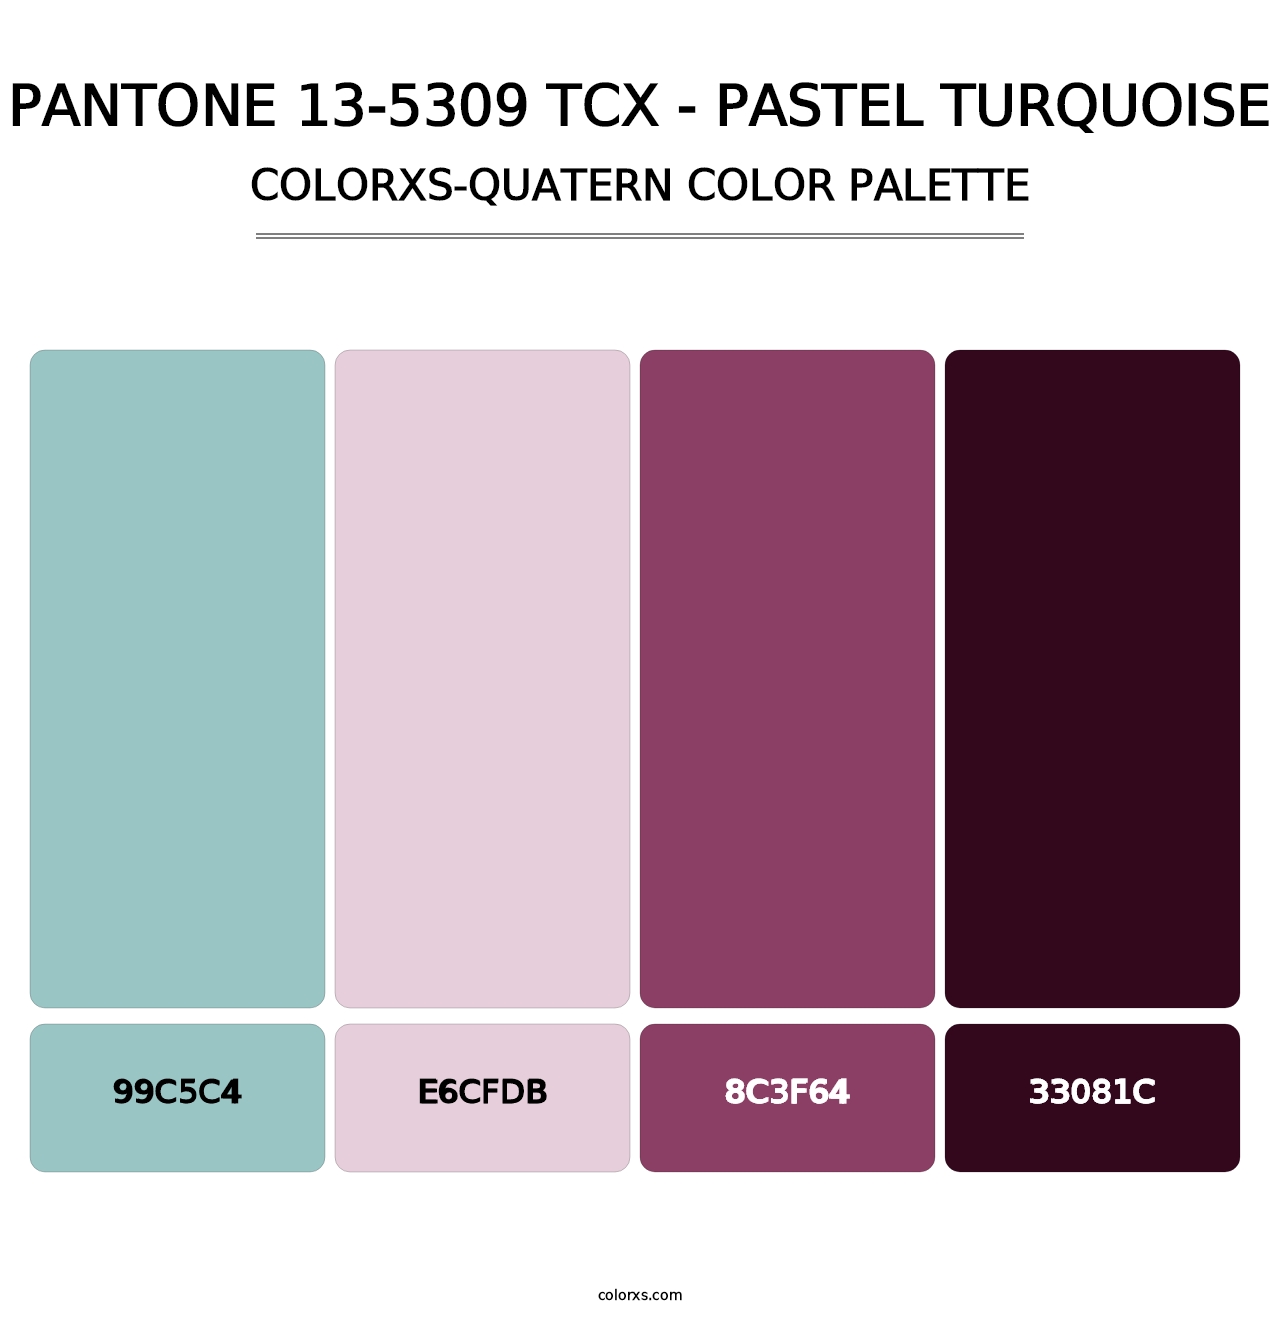 PANTONE 13-5309 TCX - Pastel Turquoise - Colorxs Quatern Palette